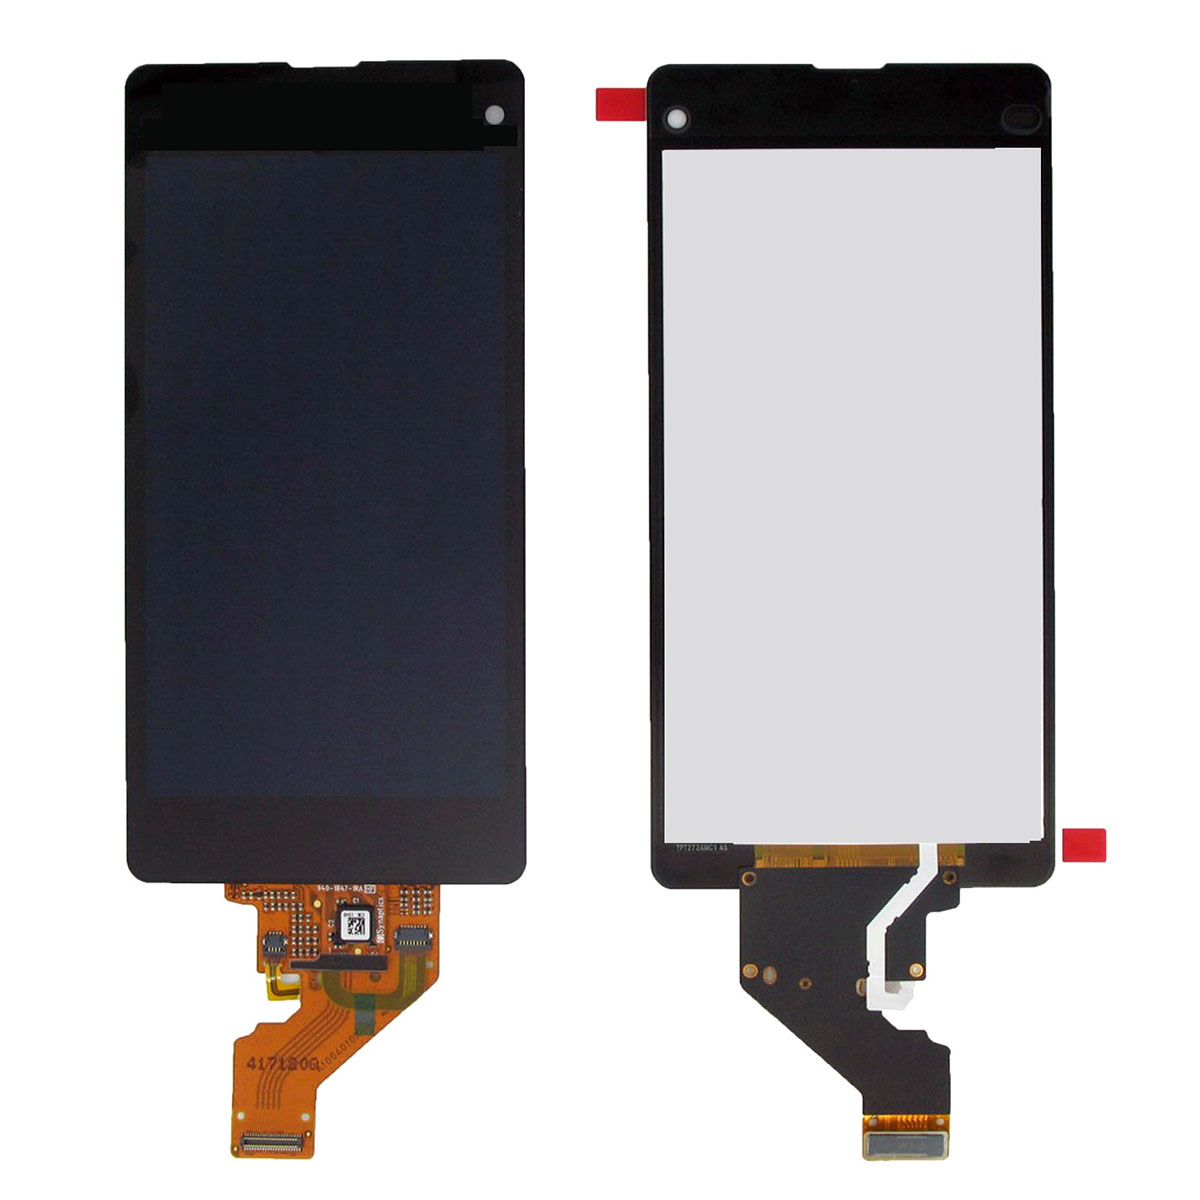 Дисплей в сборе с тачскрином для SONY Z1 compact (D5503), цвет черный.